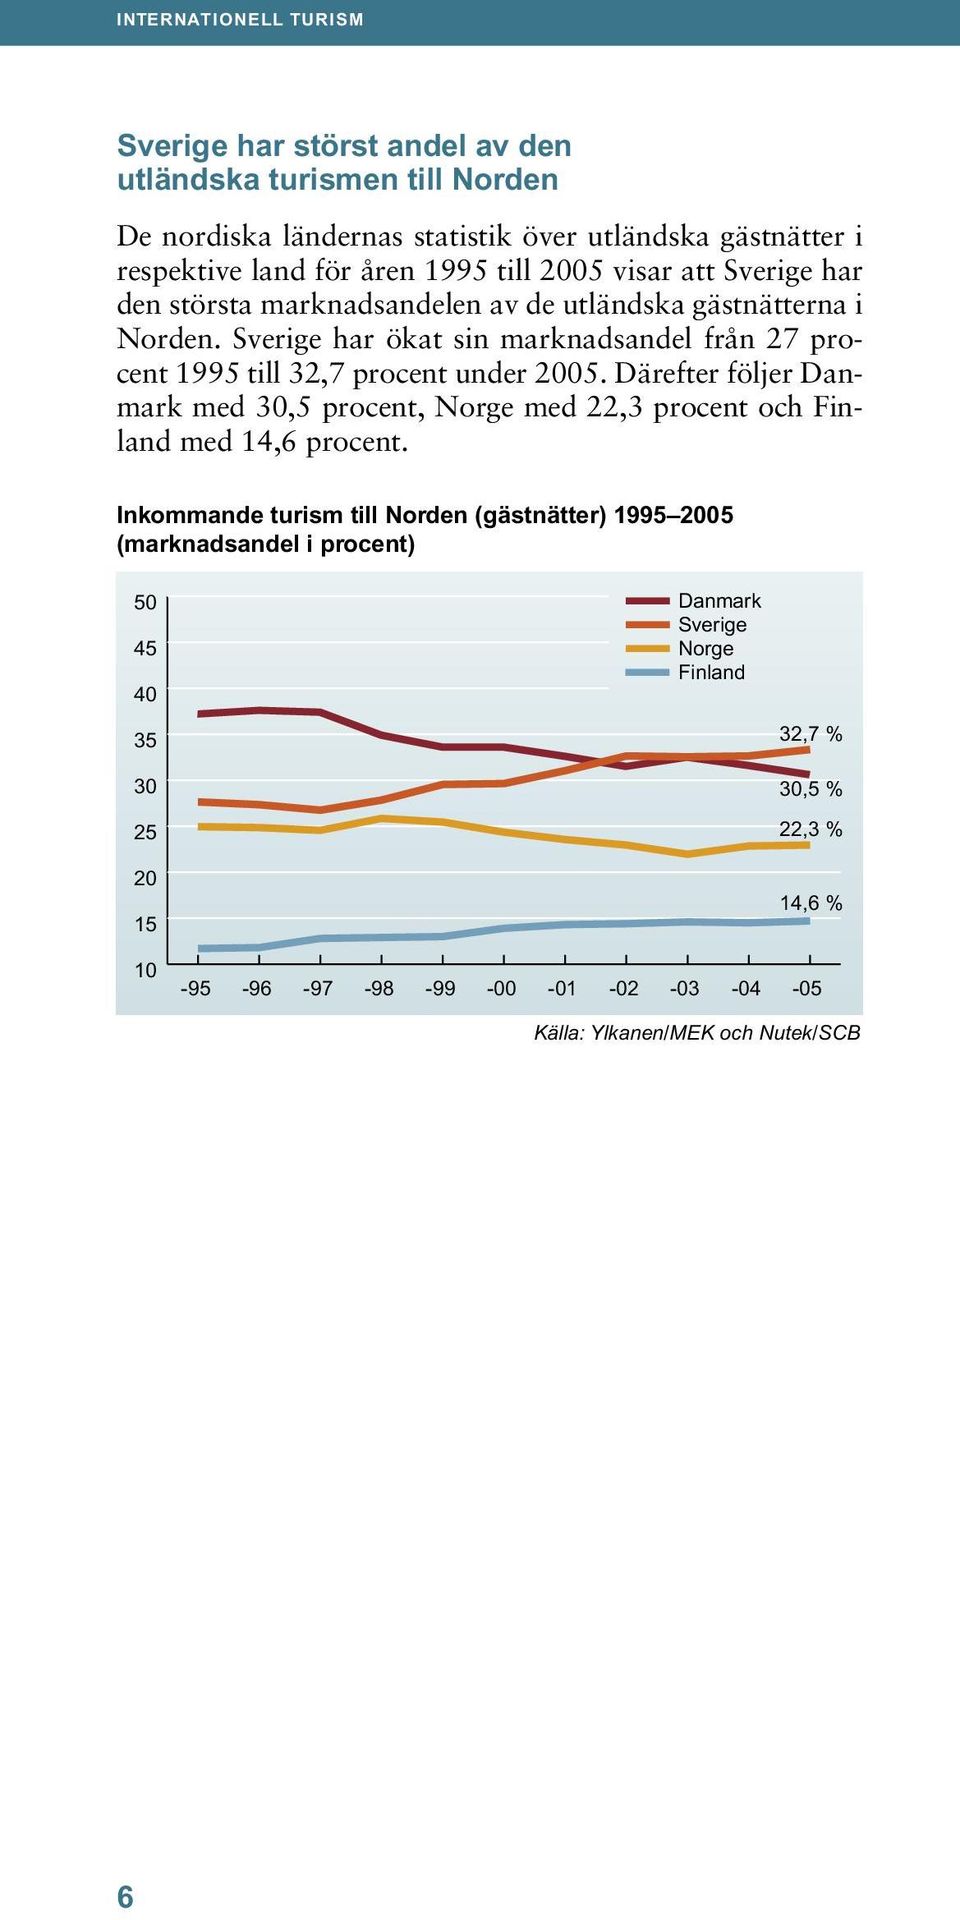 Sverige har ökat sin marknadsandel från 27 procent 1995 till 32,7 procent under 2005.